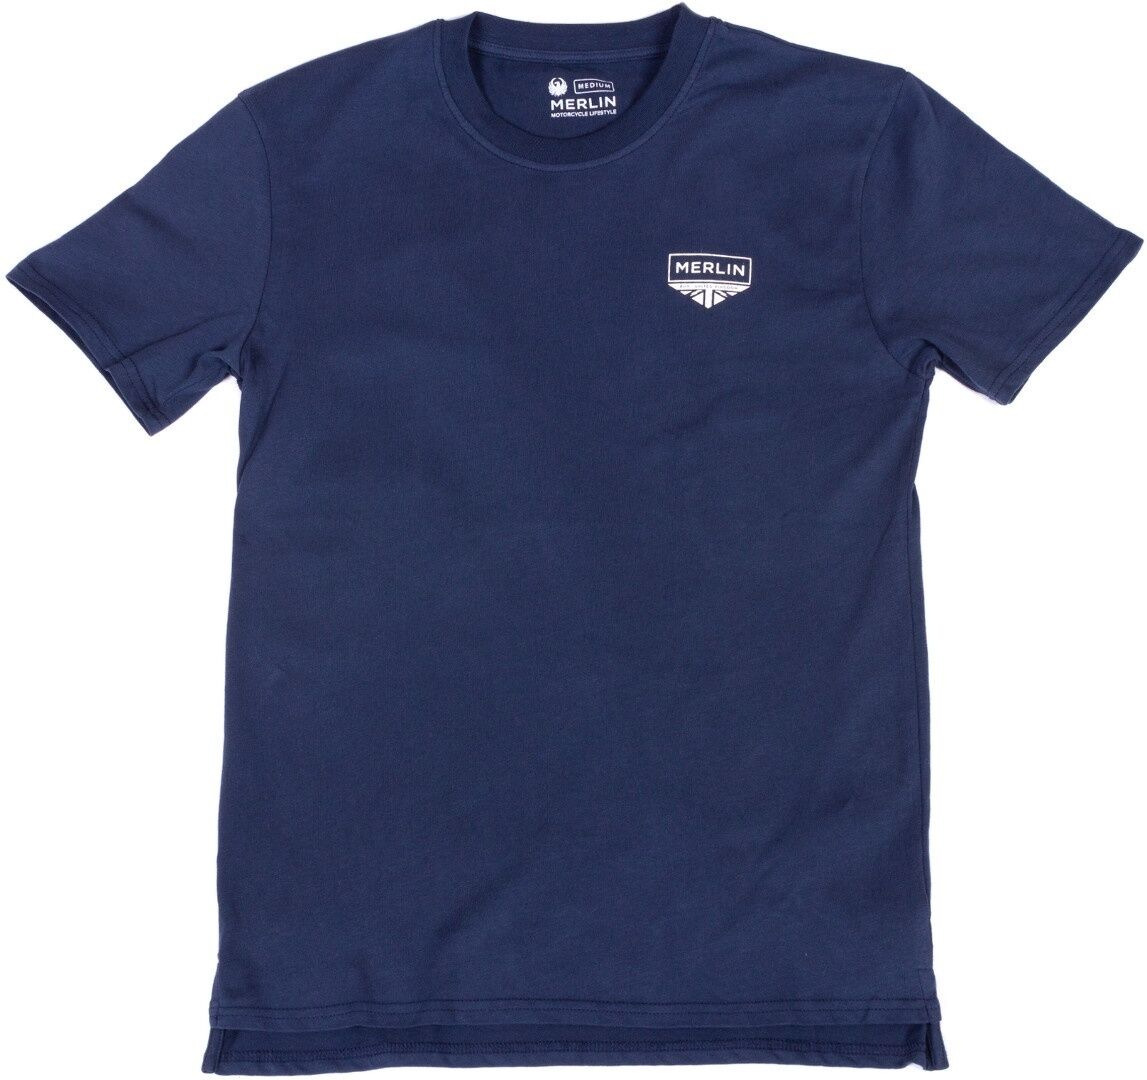 Merlin Truro Signature Camiseta - Azul (M)